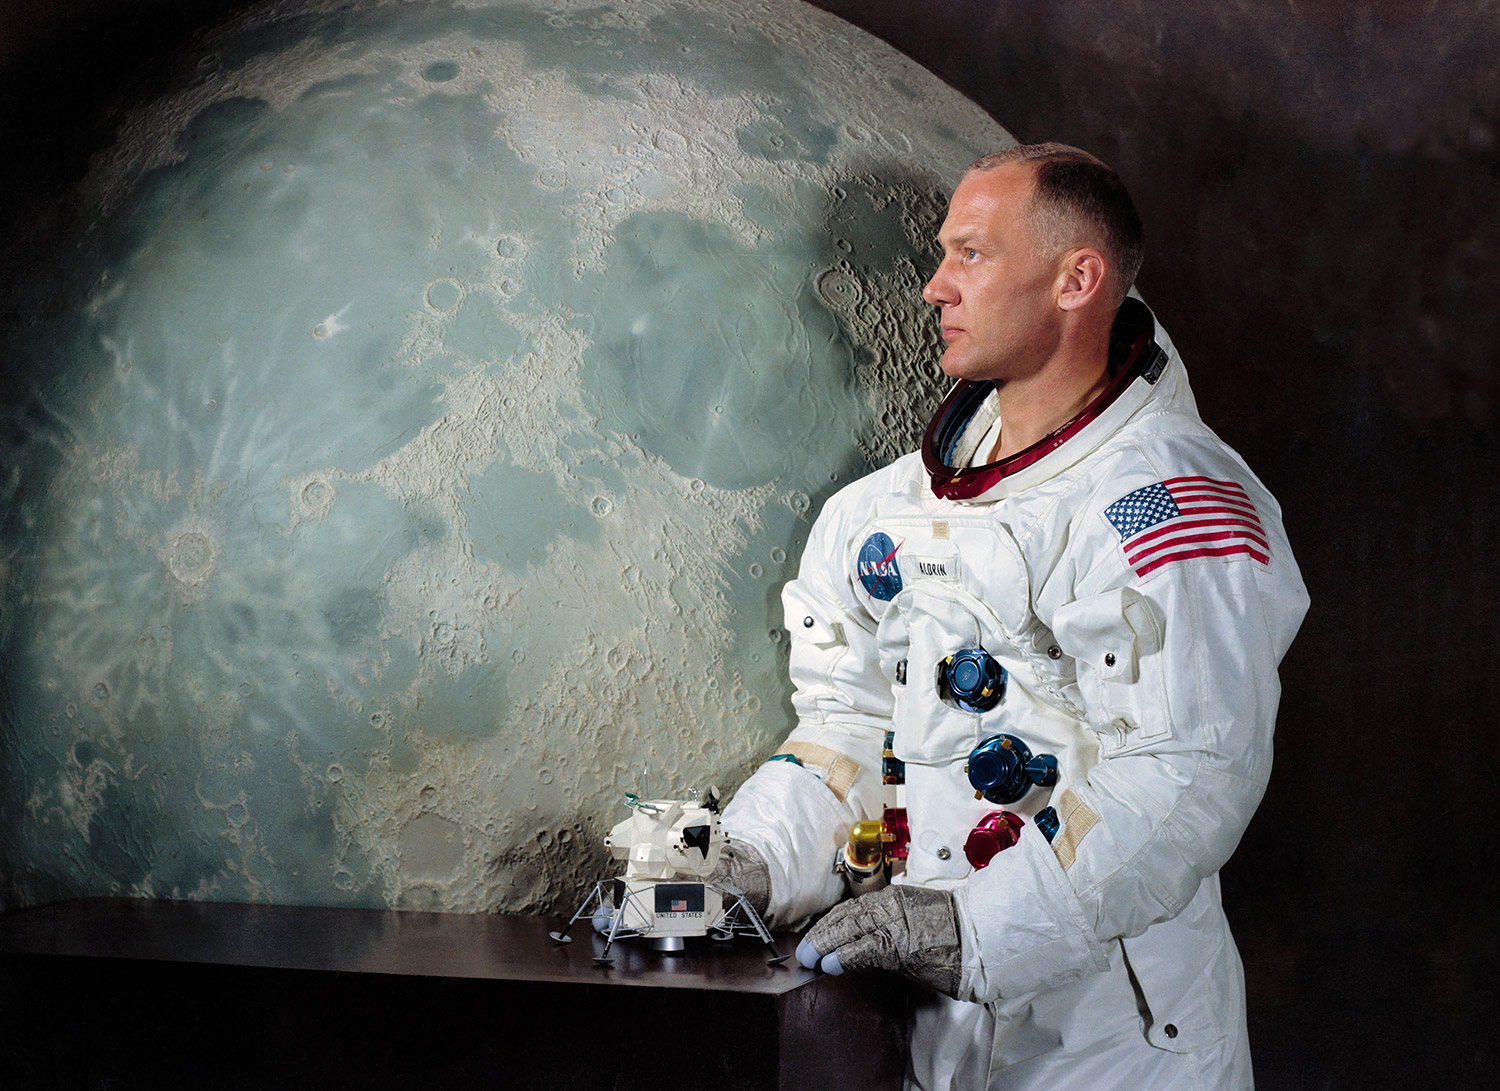 An official NASA portrait of astronaut Buzz Aldrin. Credit: NASA via Retro Space Images